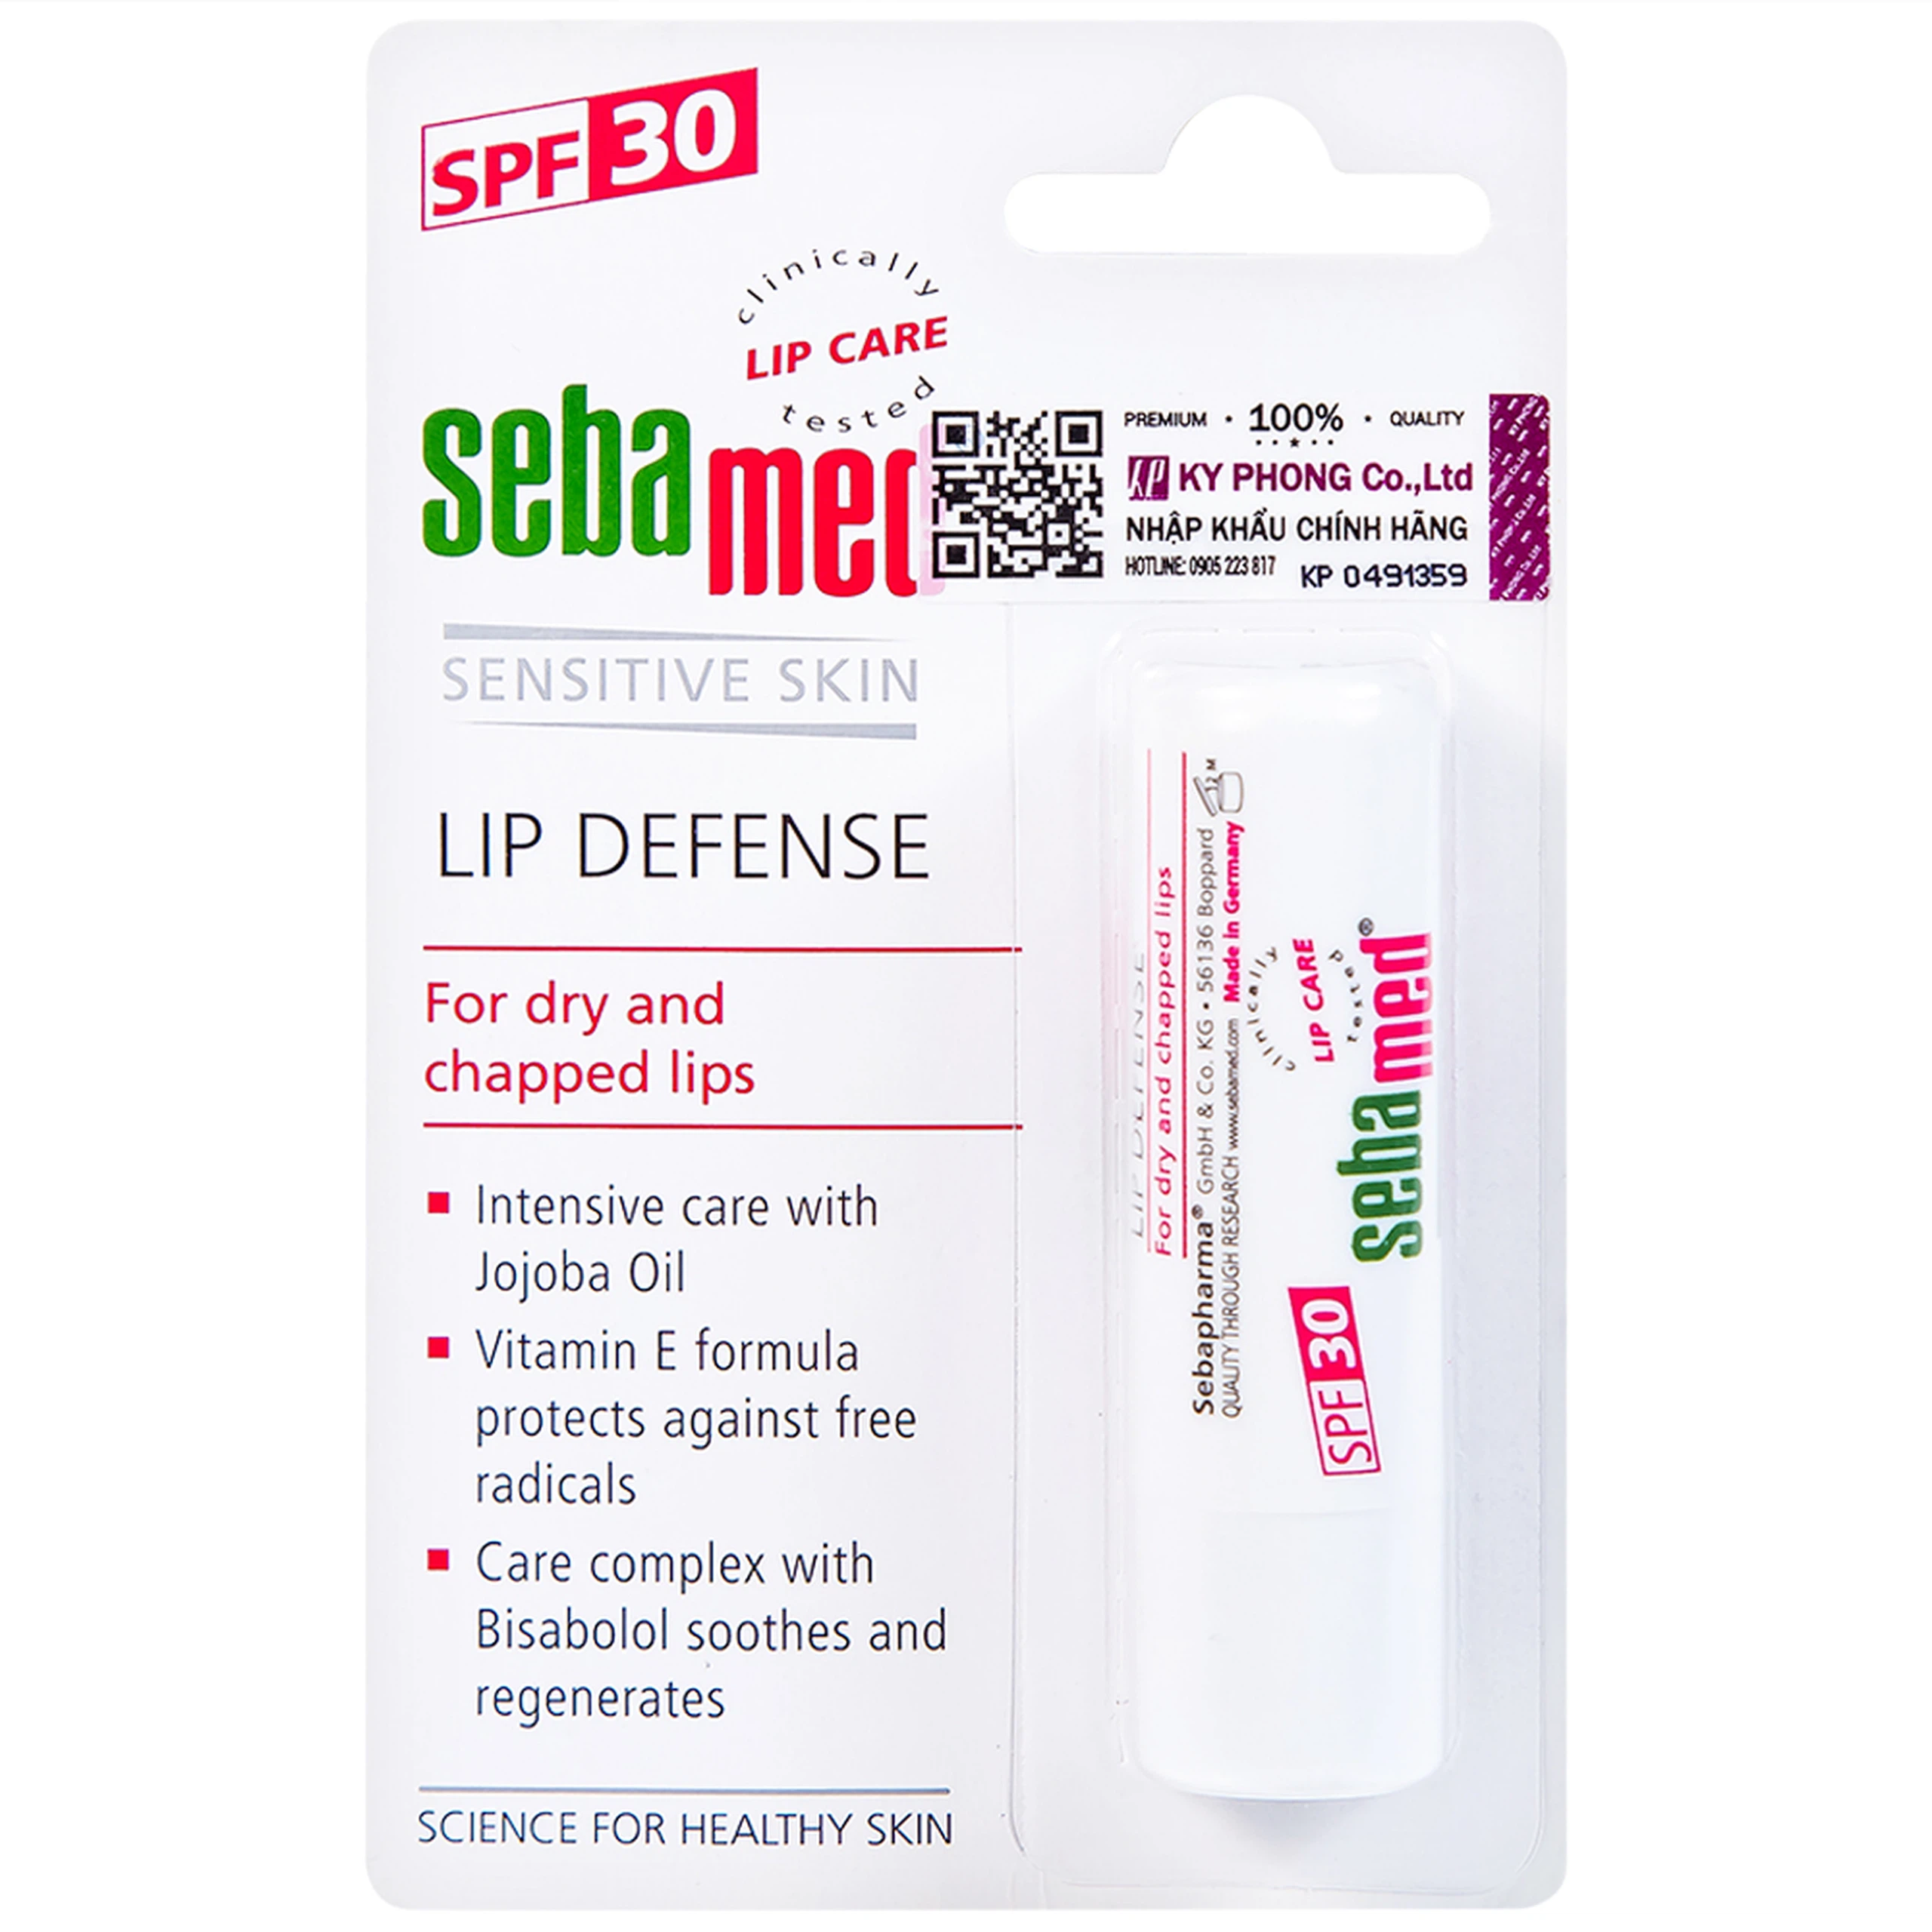 Son dưỡng bảo vệ môi Sebamed Lip Defense SPF30 cung cấp độ ẩm cho môi khô (4,8g)